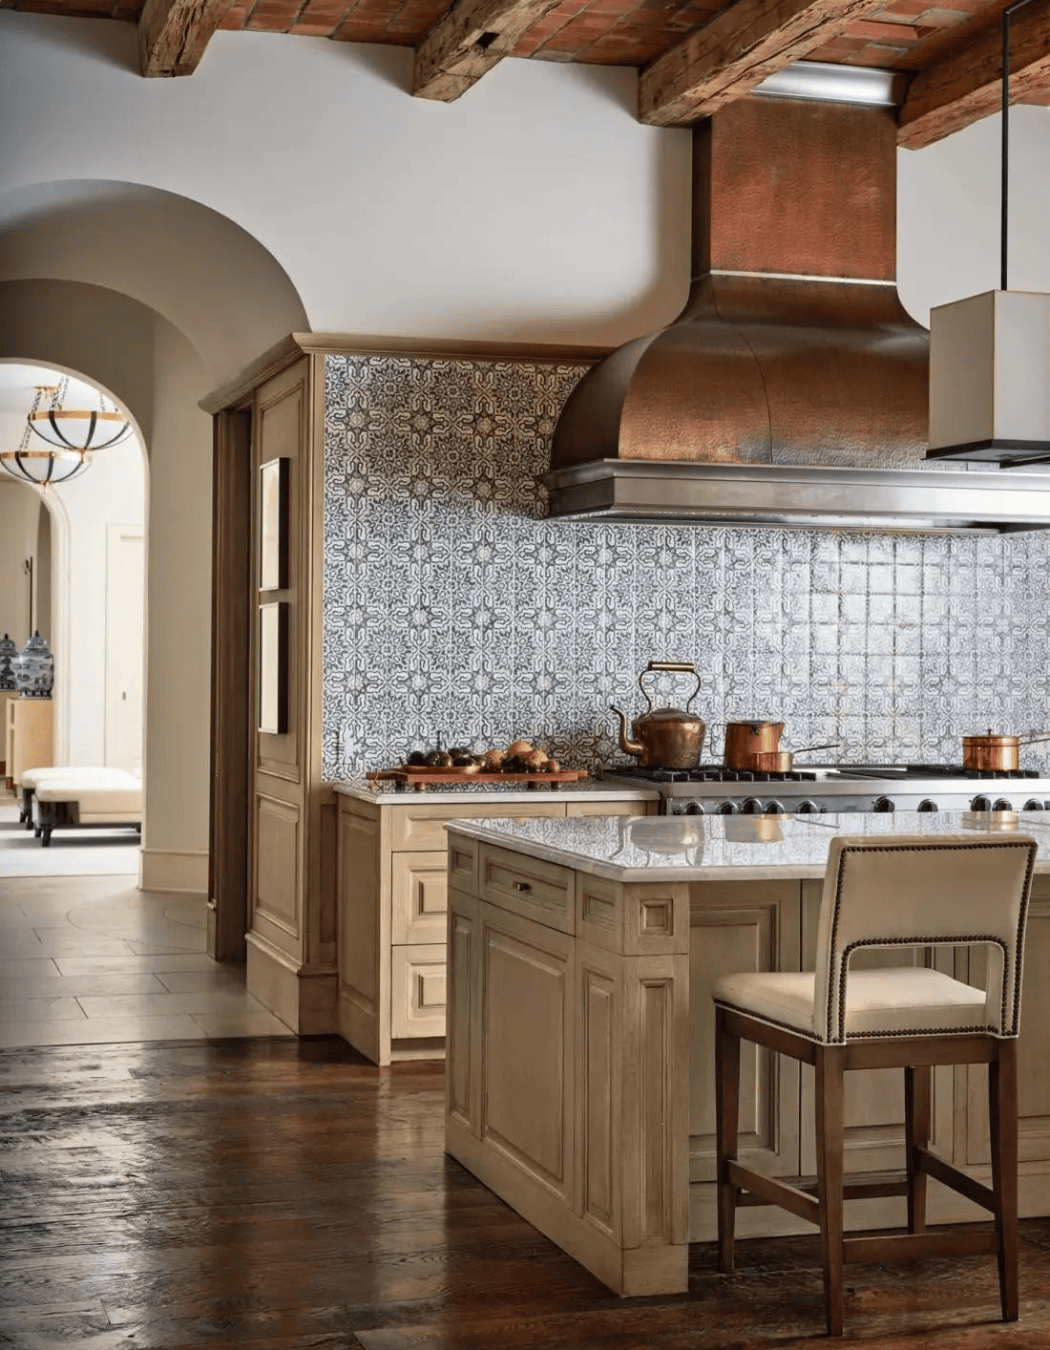 Elegant Mediterranean kitchen designed by Laura Lee Clark